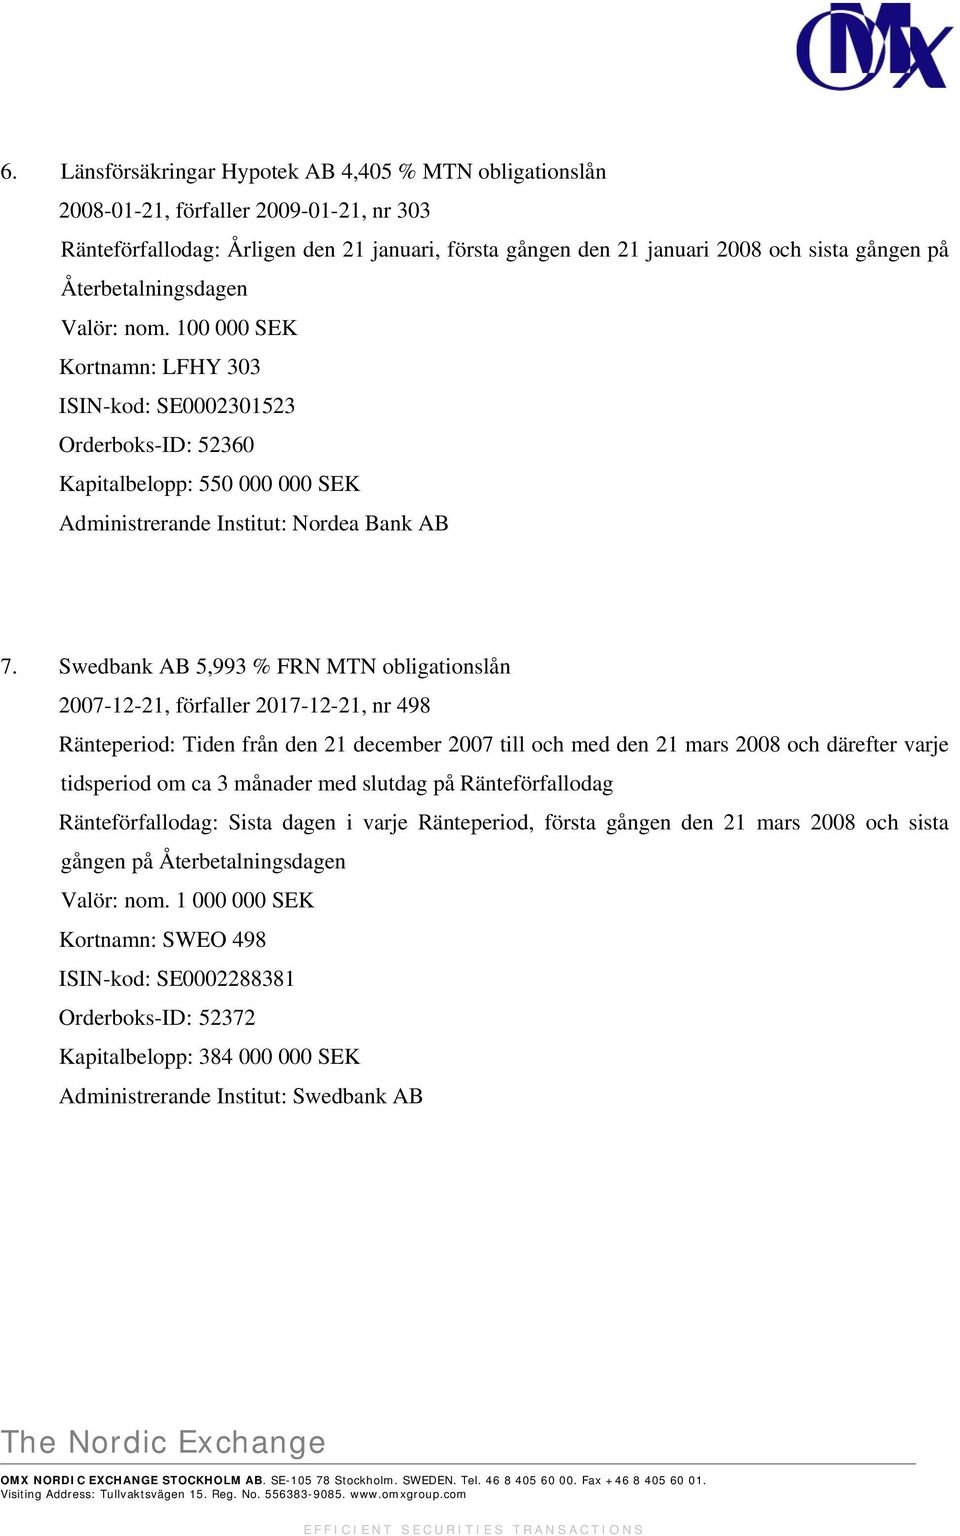 Swedbank AB 5,993 % FRN MTN obligationslån 2007-12-21, förfaller 2017-12-21, nr 498 Ränteperiod: Tiden från den 21 december 2007 till och med den 21 mars 2008 och därefter varje tidsperiod om ca 3